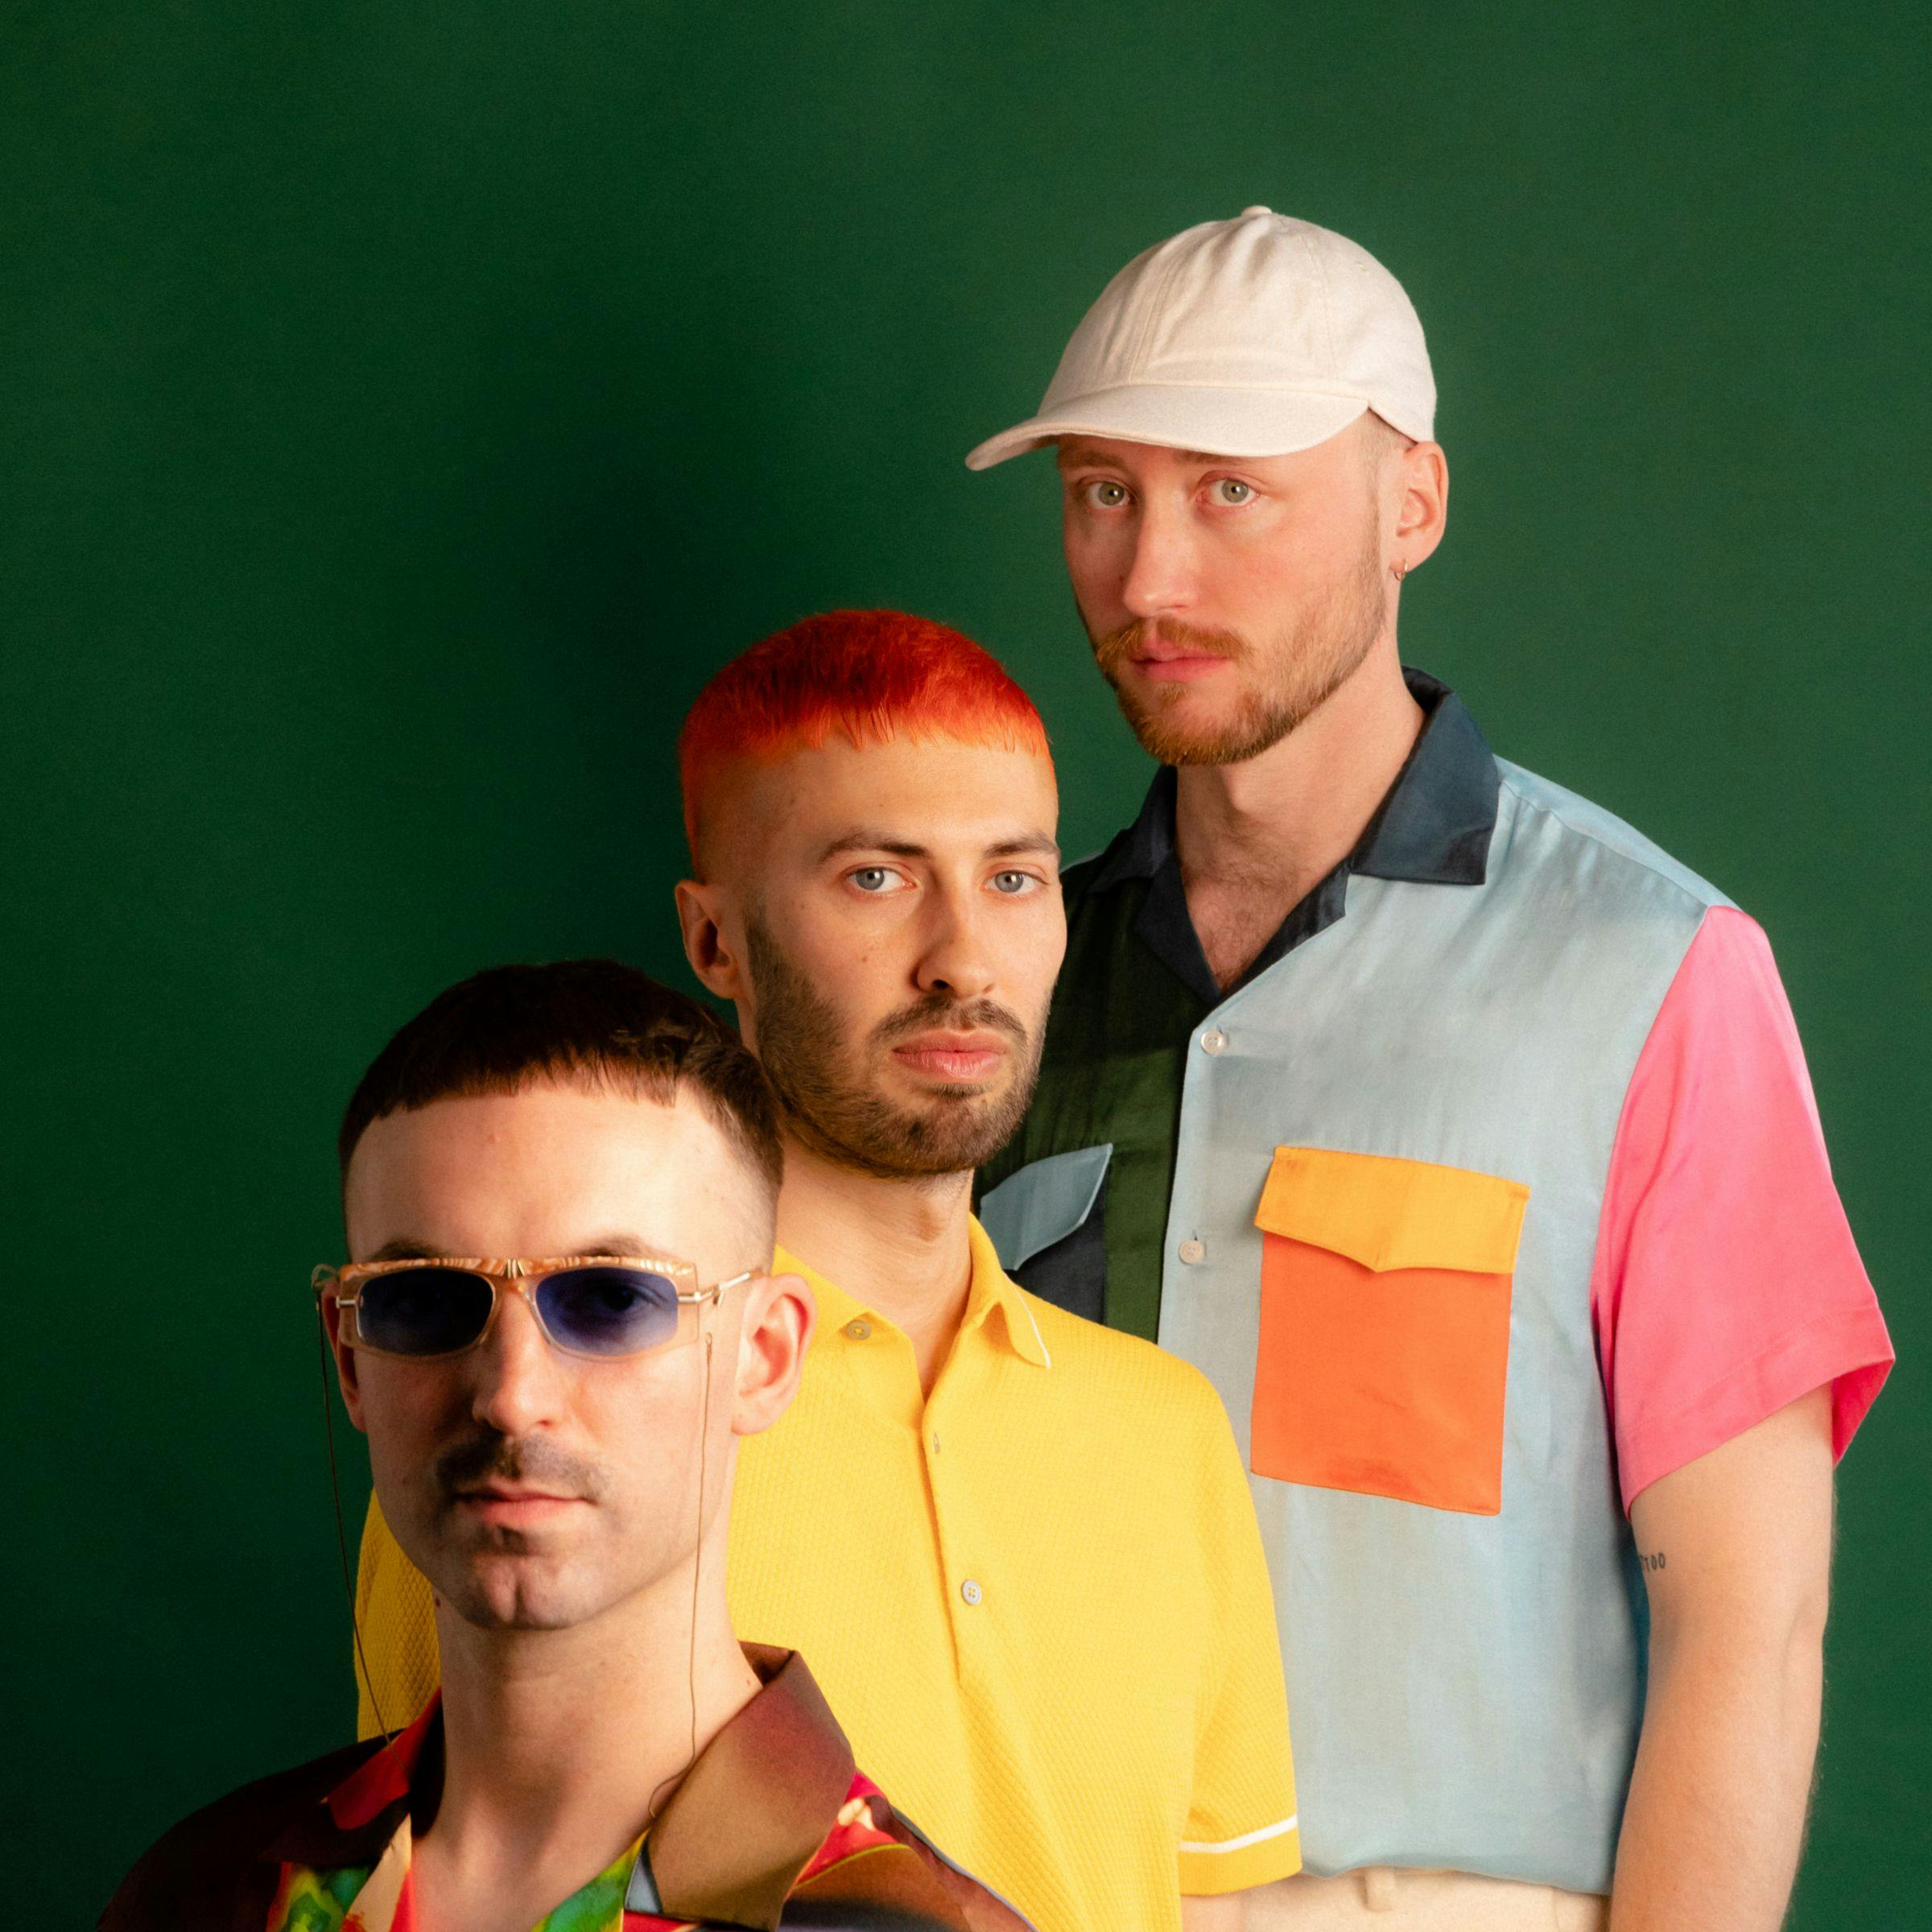 Die drei Bandmitglieder von Tropikel Ltd. stehen in farbiger Kleidung vor dunkelgrünem Hintergrund und schauen direkt in die Kamera.